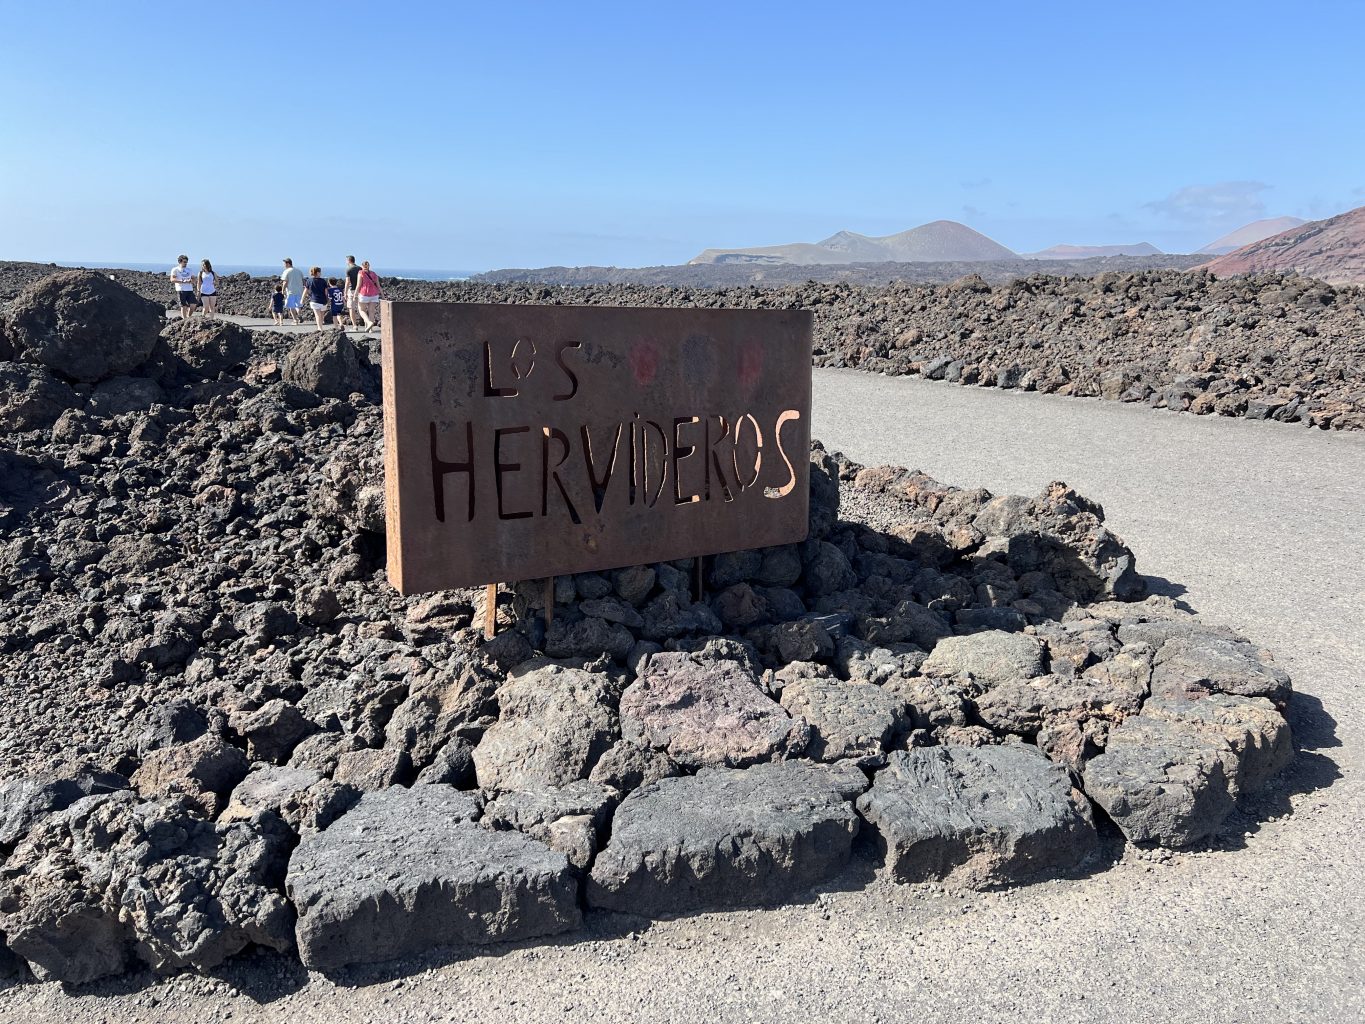 Los Hervideros. Qué ver y hacer en Lanzarote